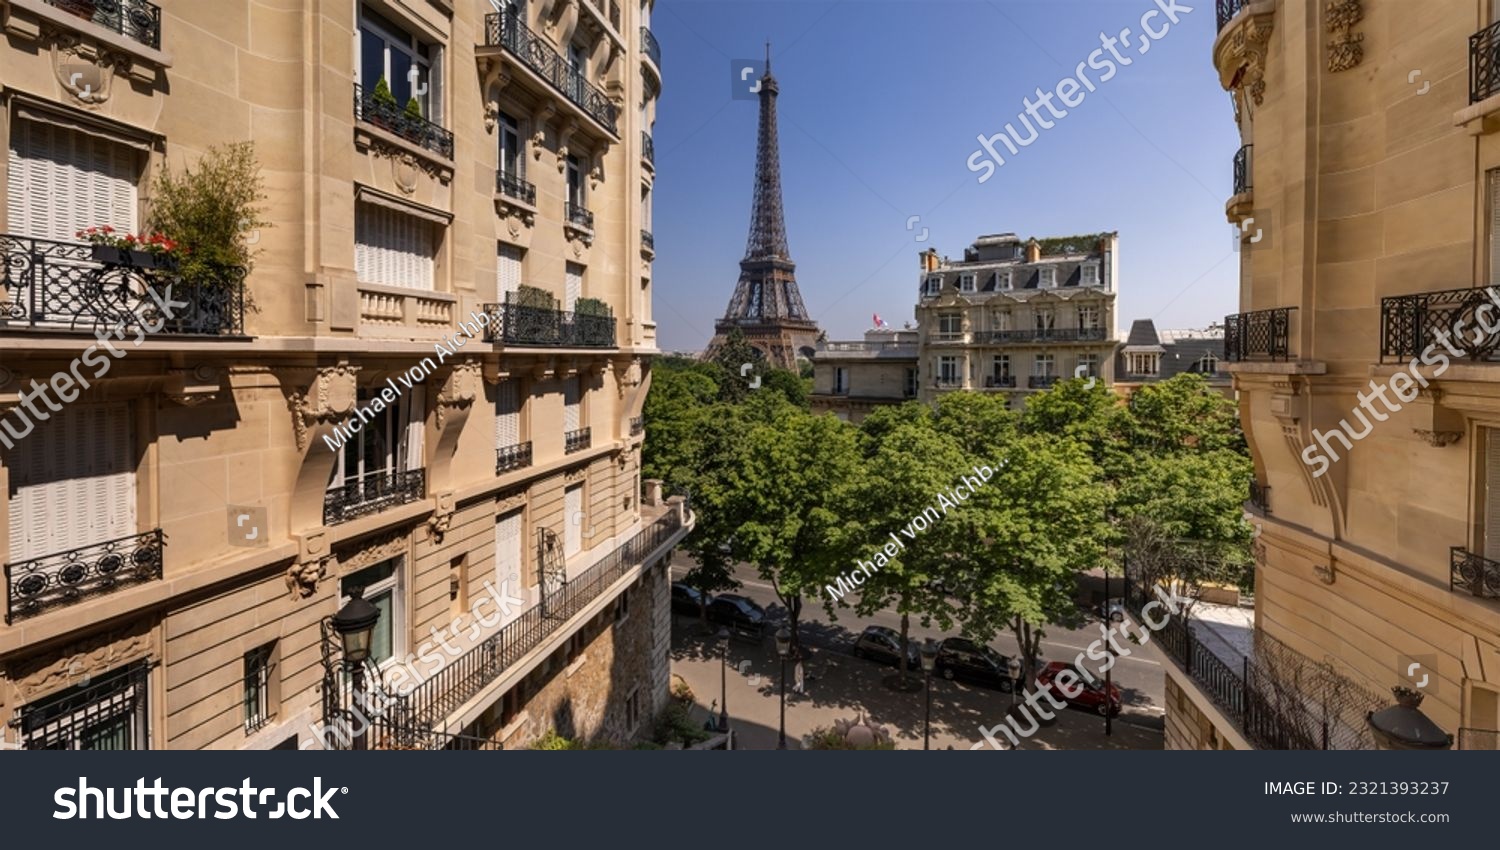 Paris, Eiffel Tower as seen from av. de Camoens #2321393237